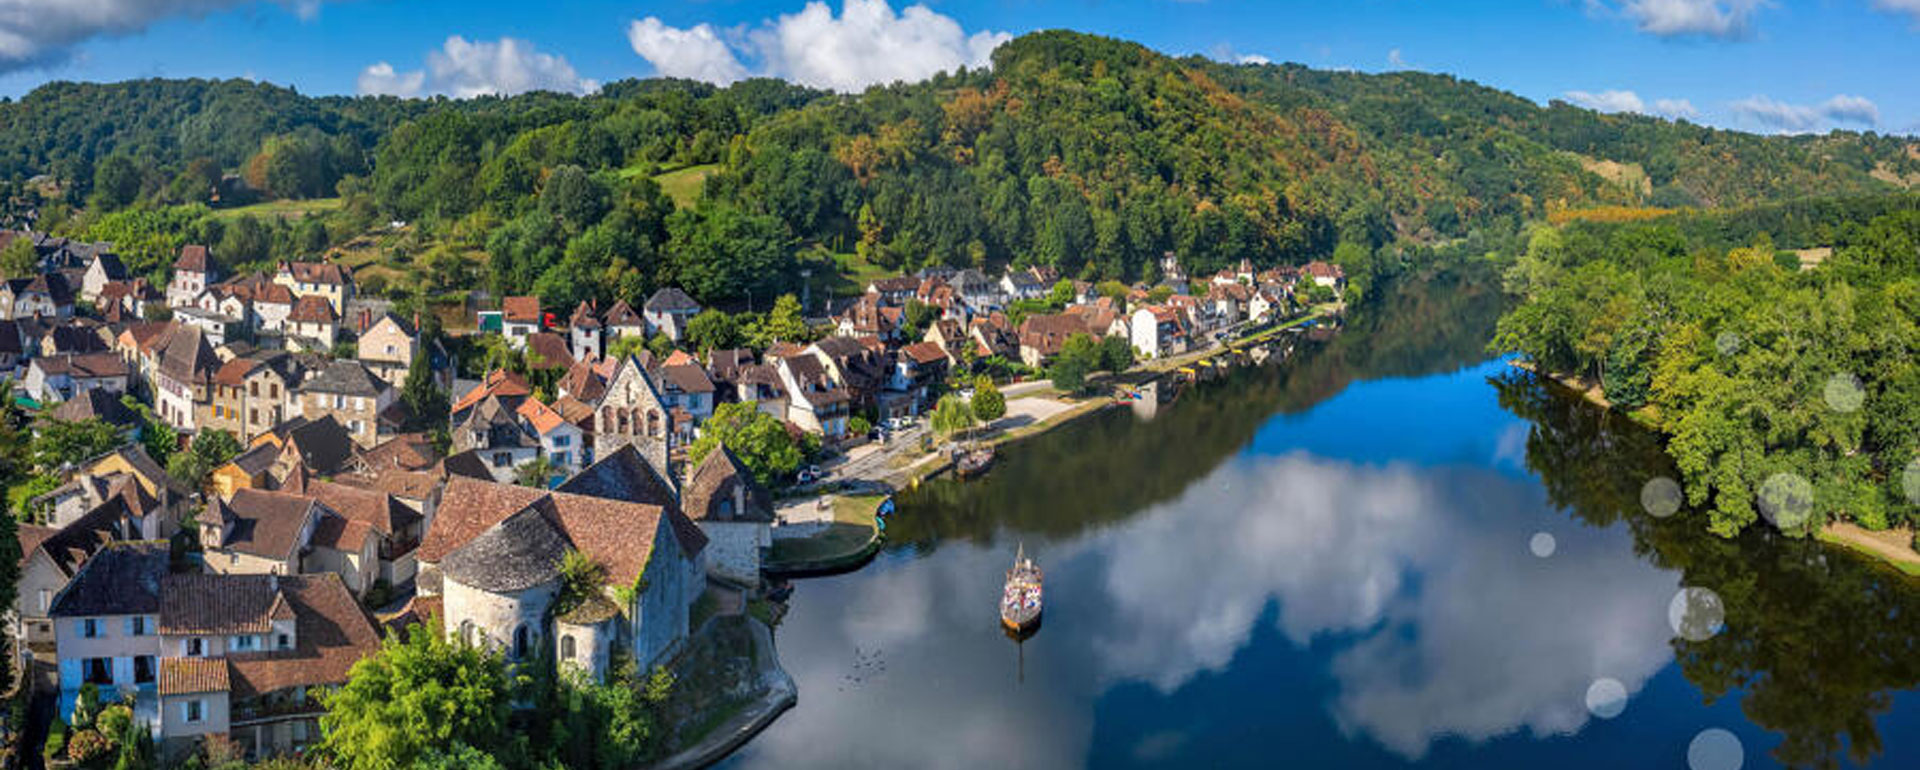 Beaulieu-sur-Dordogne, Vallée de la Dordogne